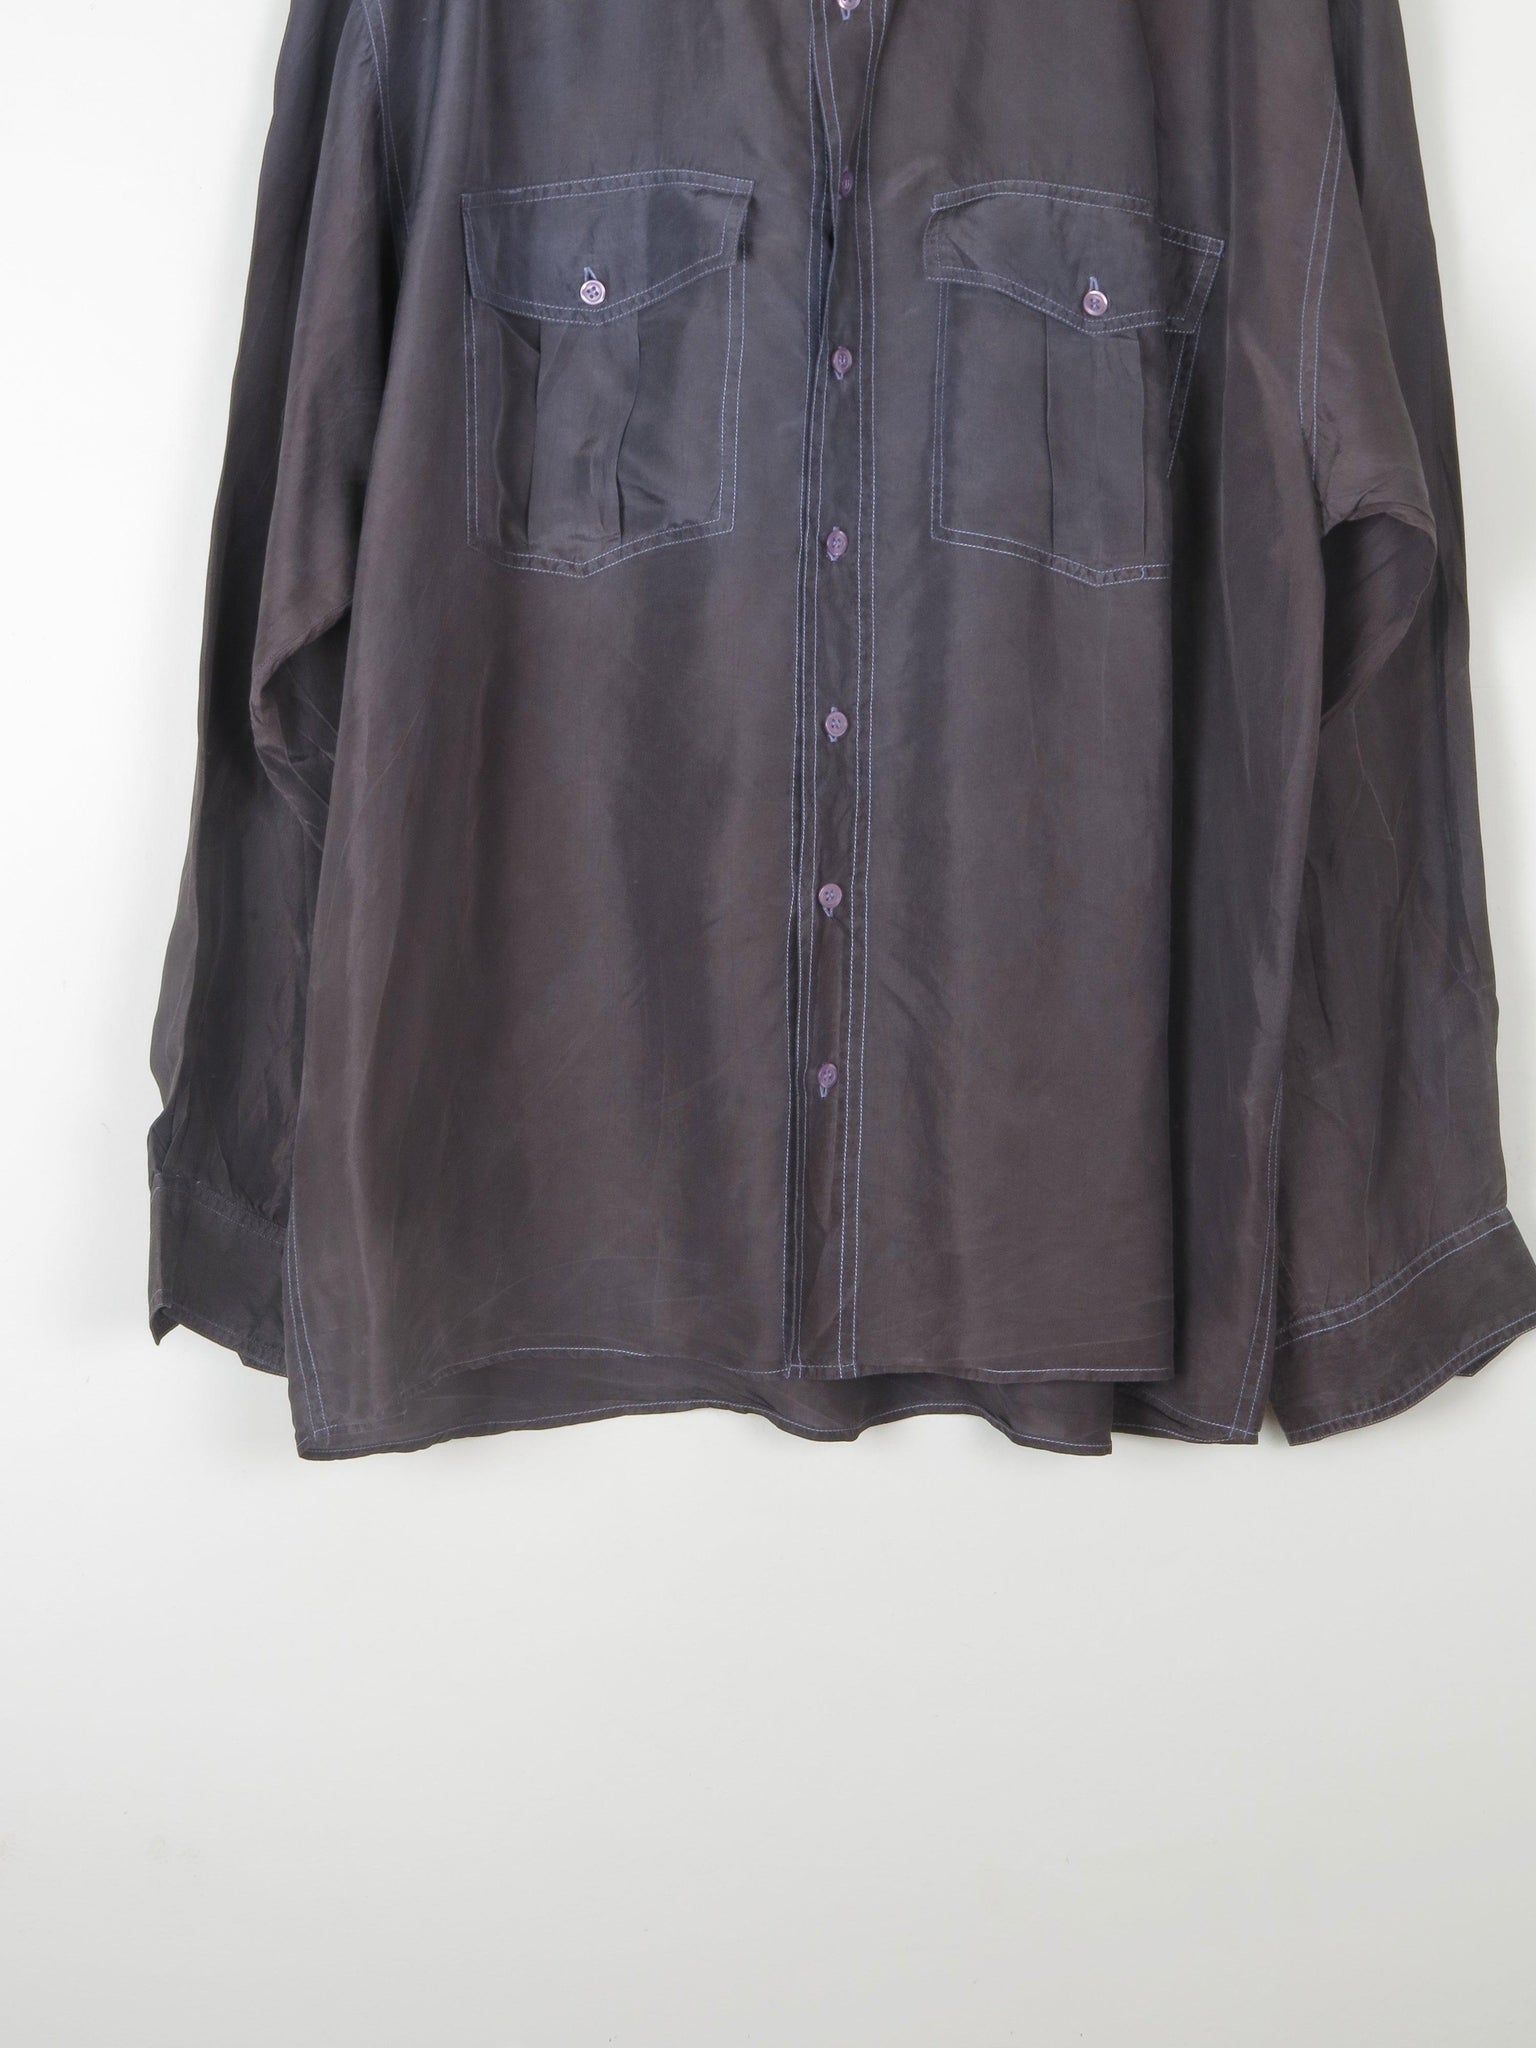 Men's Blue/Black Vintage Silk Long Sleeved Shirt XL - The Harlequin